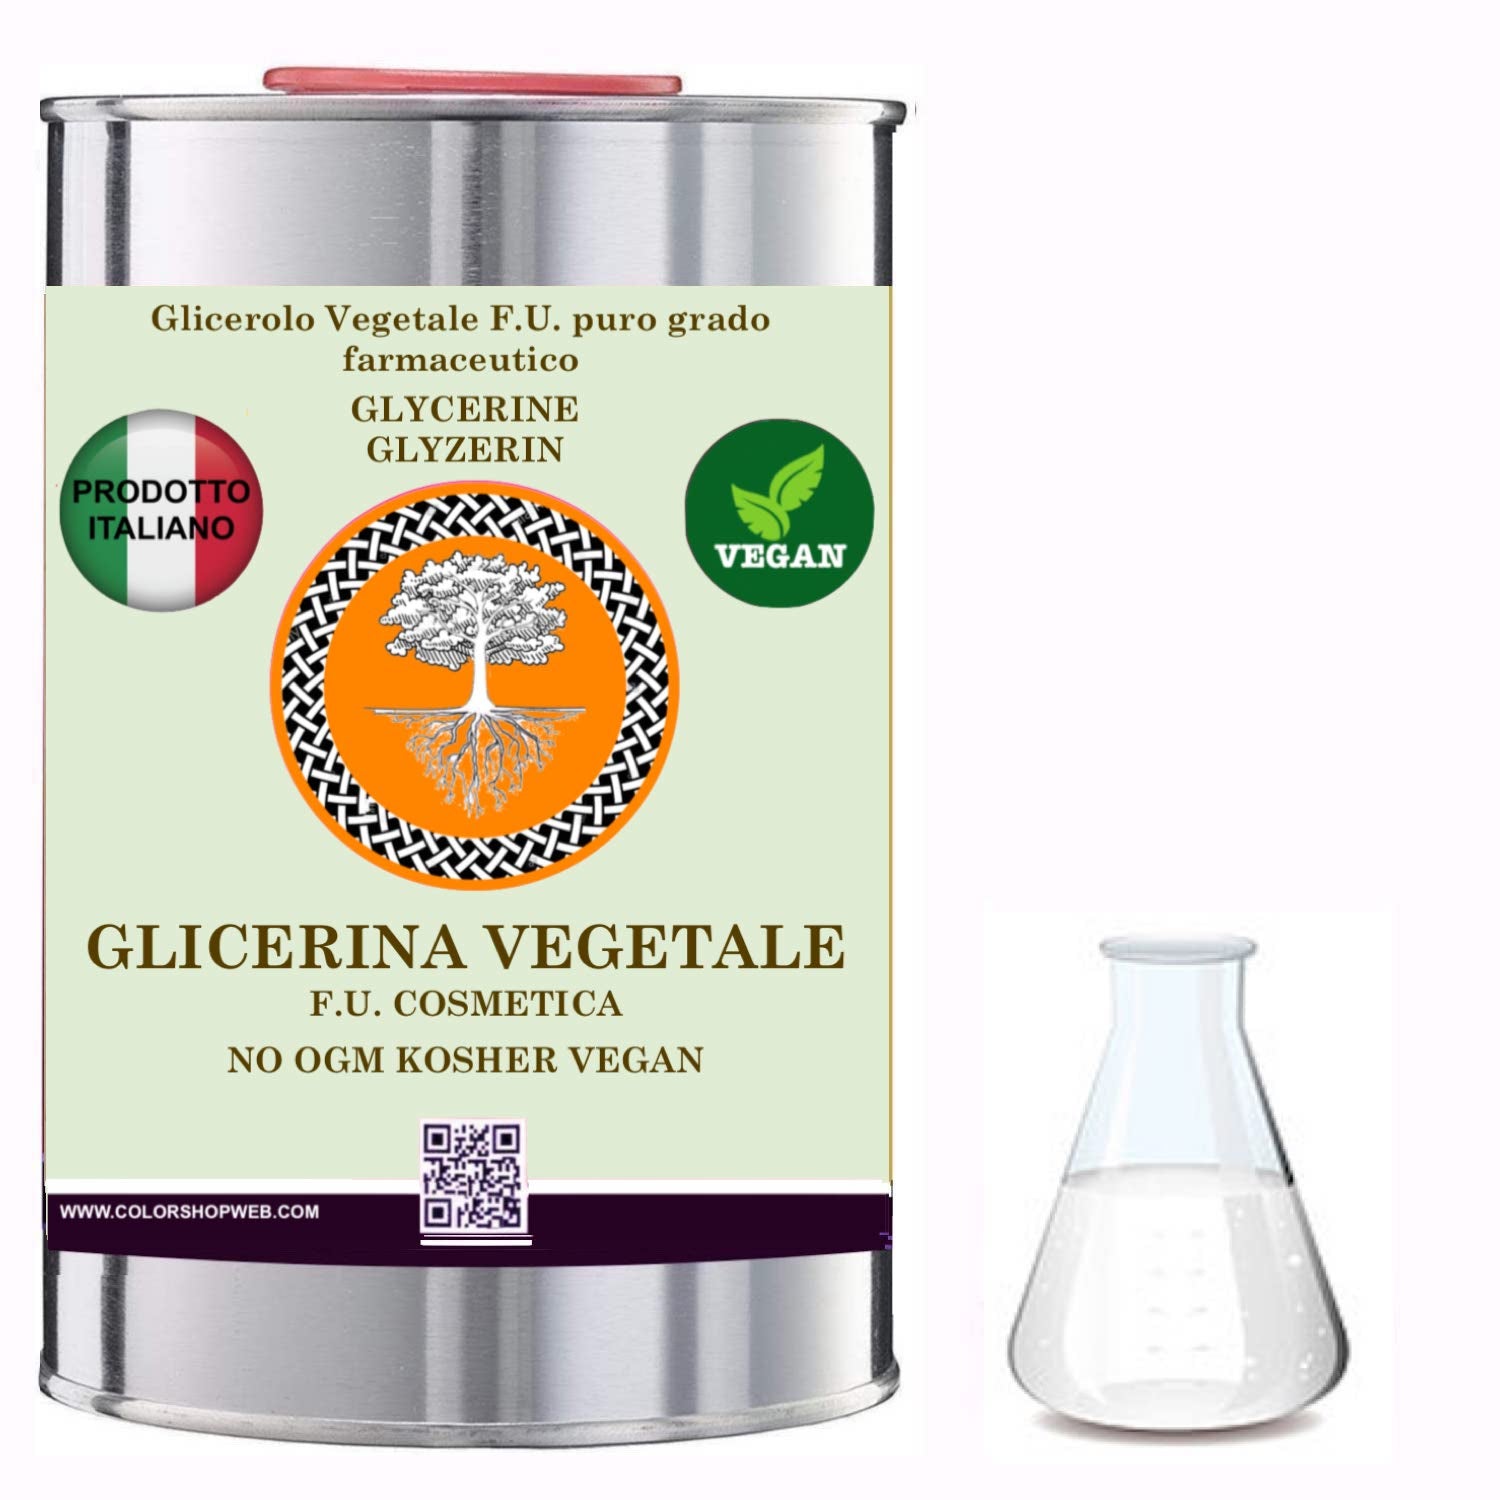 Glicerolo Vegetale F.U. puro FARMACOPEA UFFICIALE glicerina pura